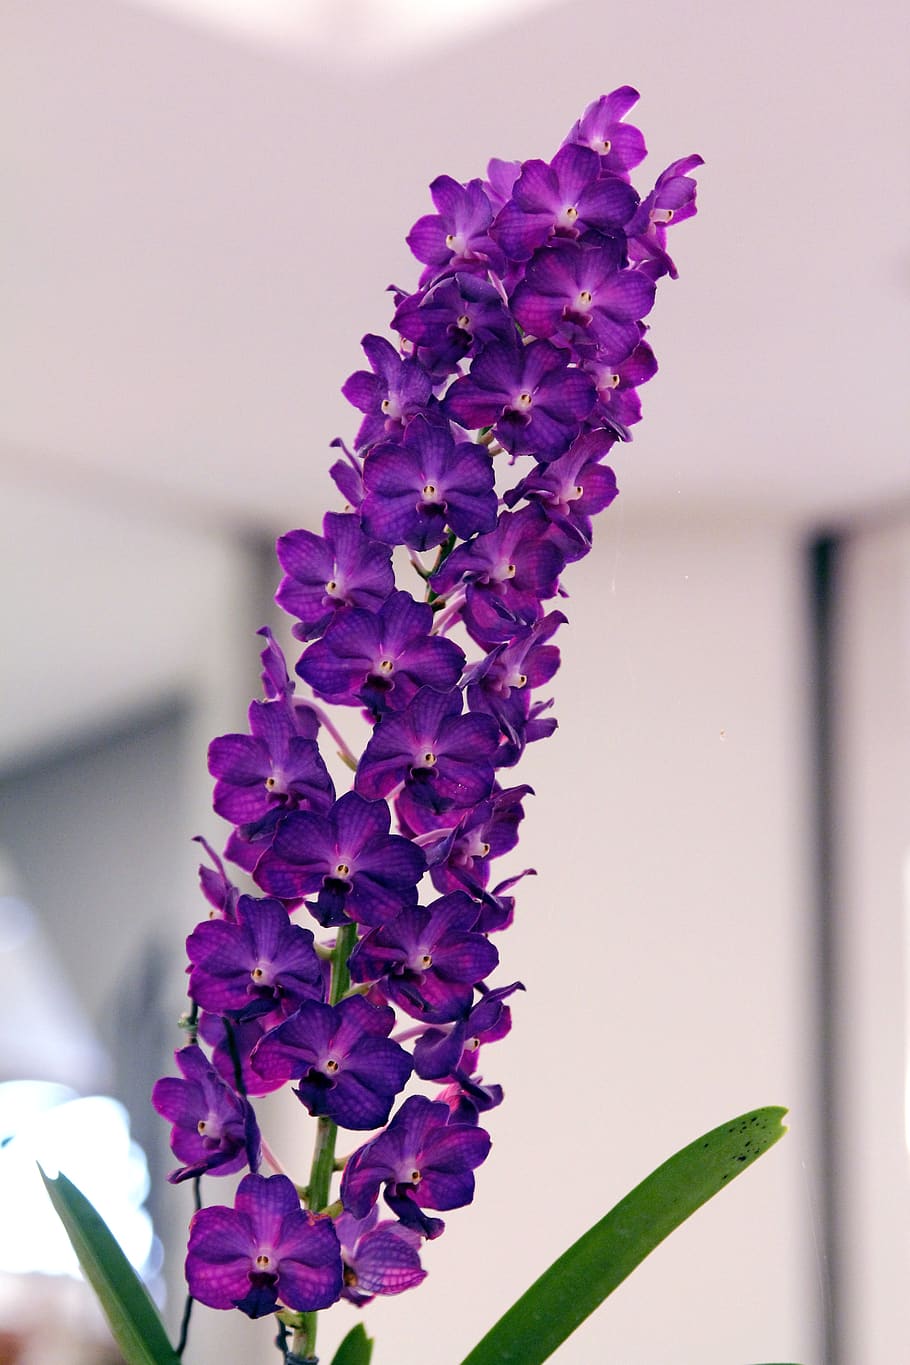 Fotos orquídea de vanda libres de regalías | Pxfuel